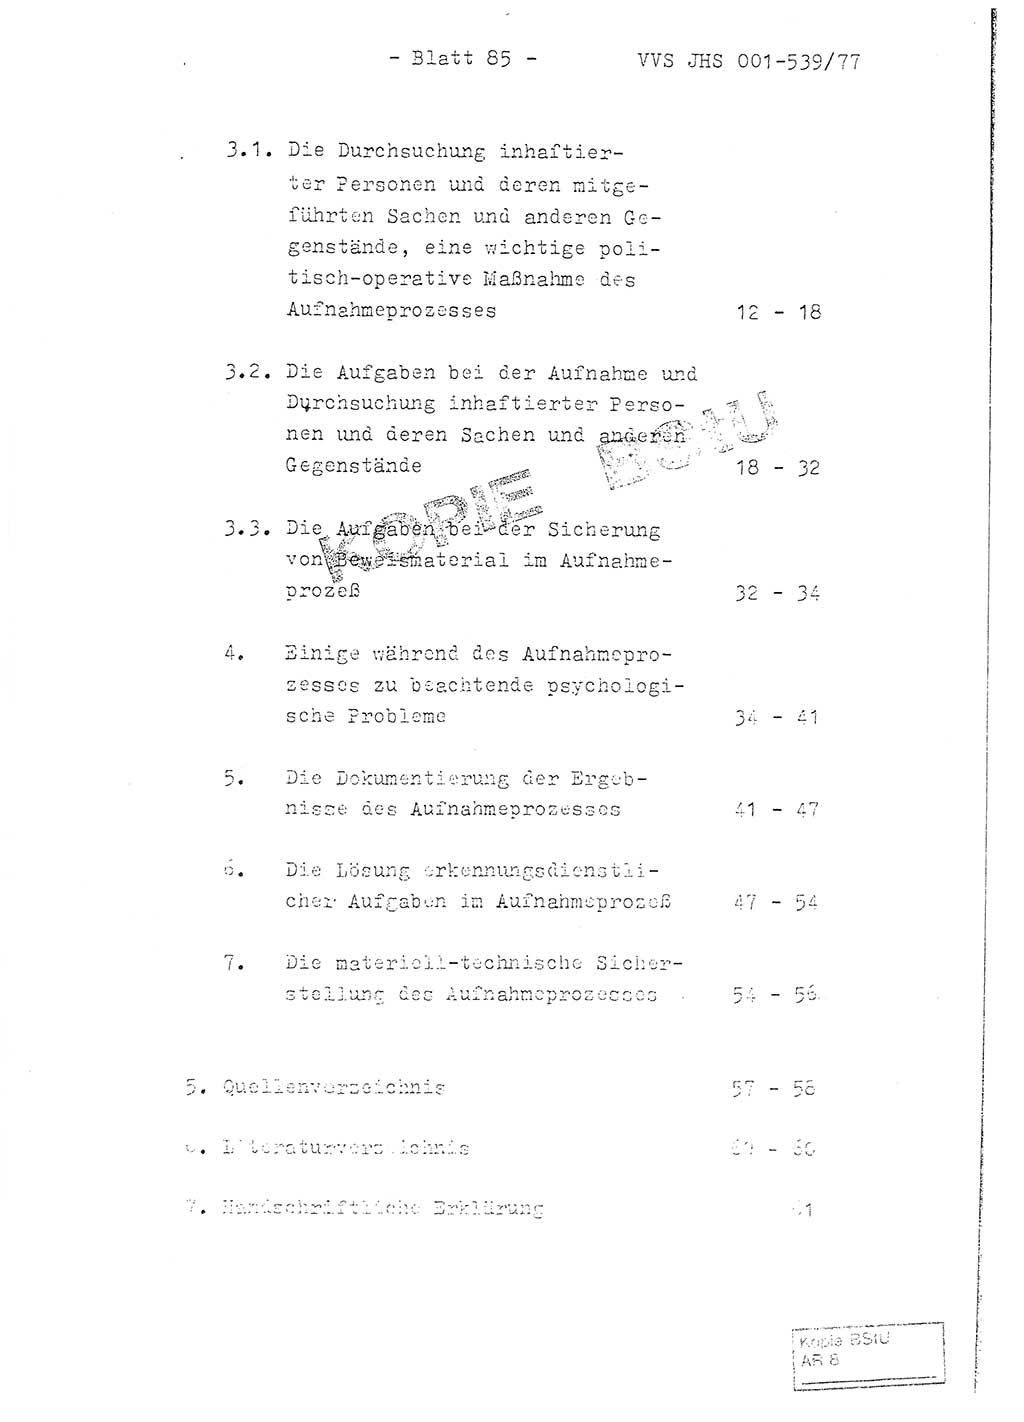 Fachschulabschlußarbeit Hauptmann Dietrich Jung (Abt. ⅩⅣ), Leutnant Klaus Klötzner (Abt. ⅩⅣ), Ministerium für Staatssicherheit (MfS) [Deutsche Demokratische Republik (DDR)], Juristische Hochschule (JHS), Vertrauliche Verschlußsache (VVS) 001-539/77, Potsdam 1978, Seite 85 (FS-Abschl.-Arb. MfS DDR JHS VVS 001-539/77 1978, S. 85)